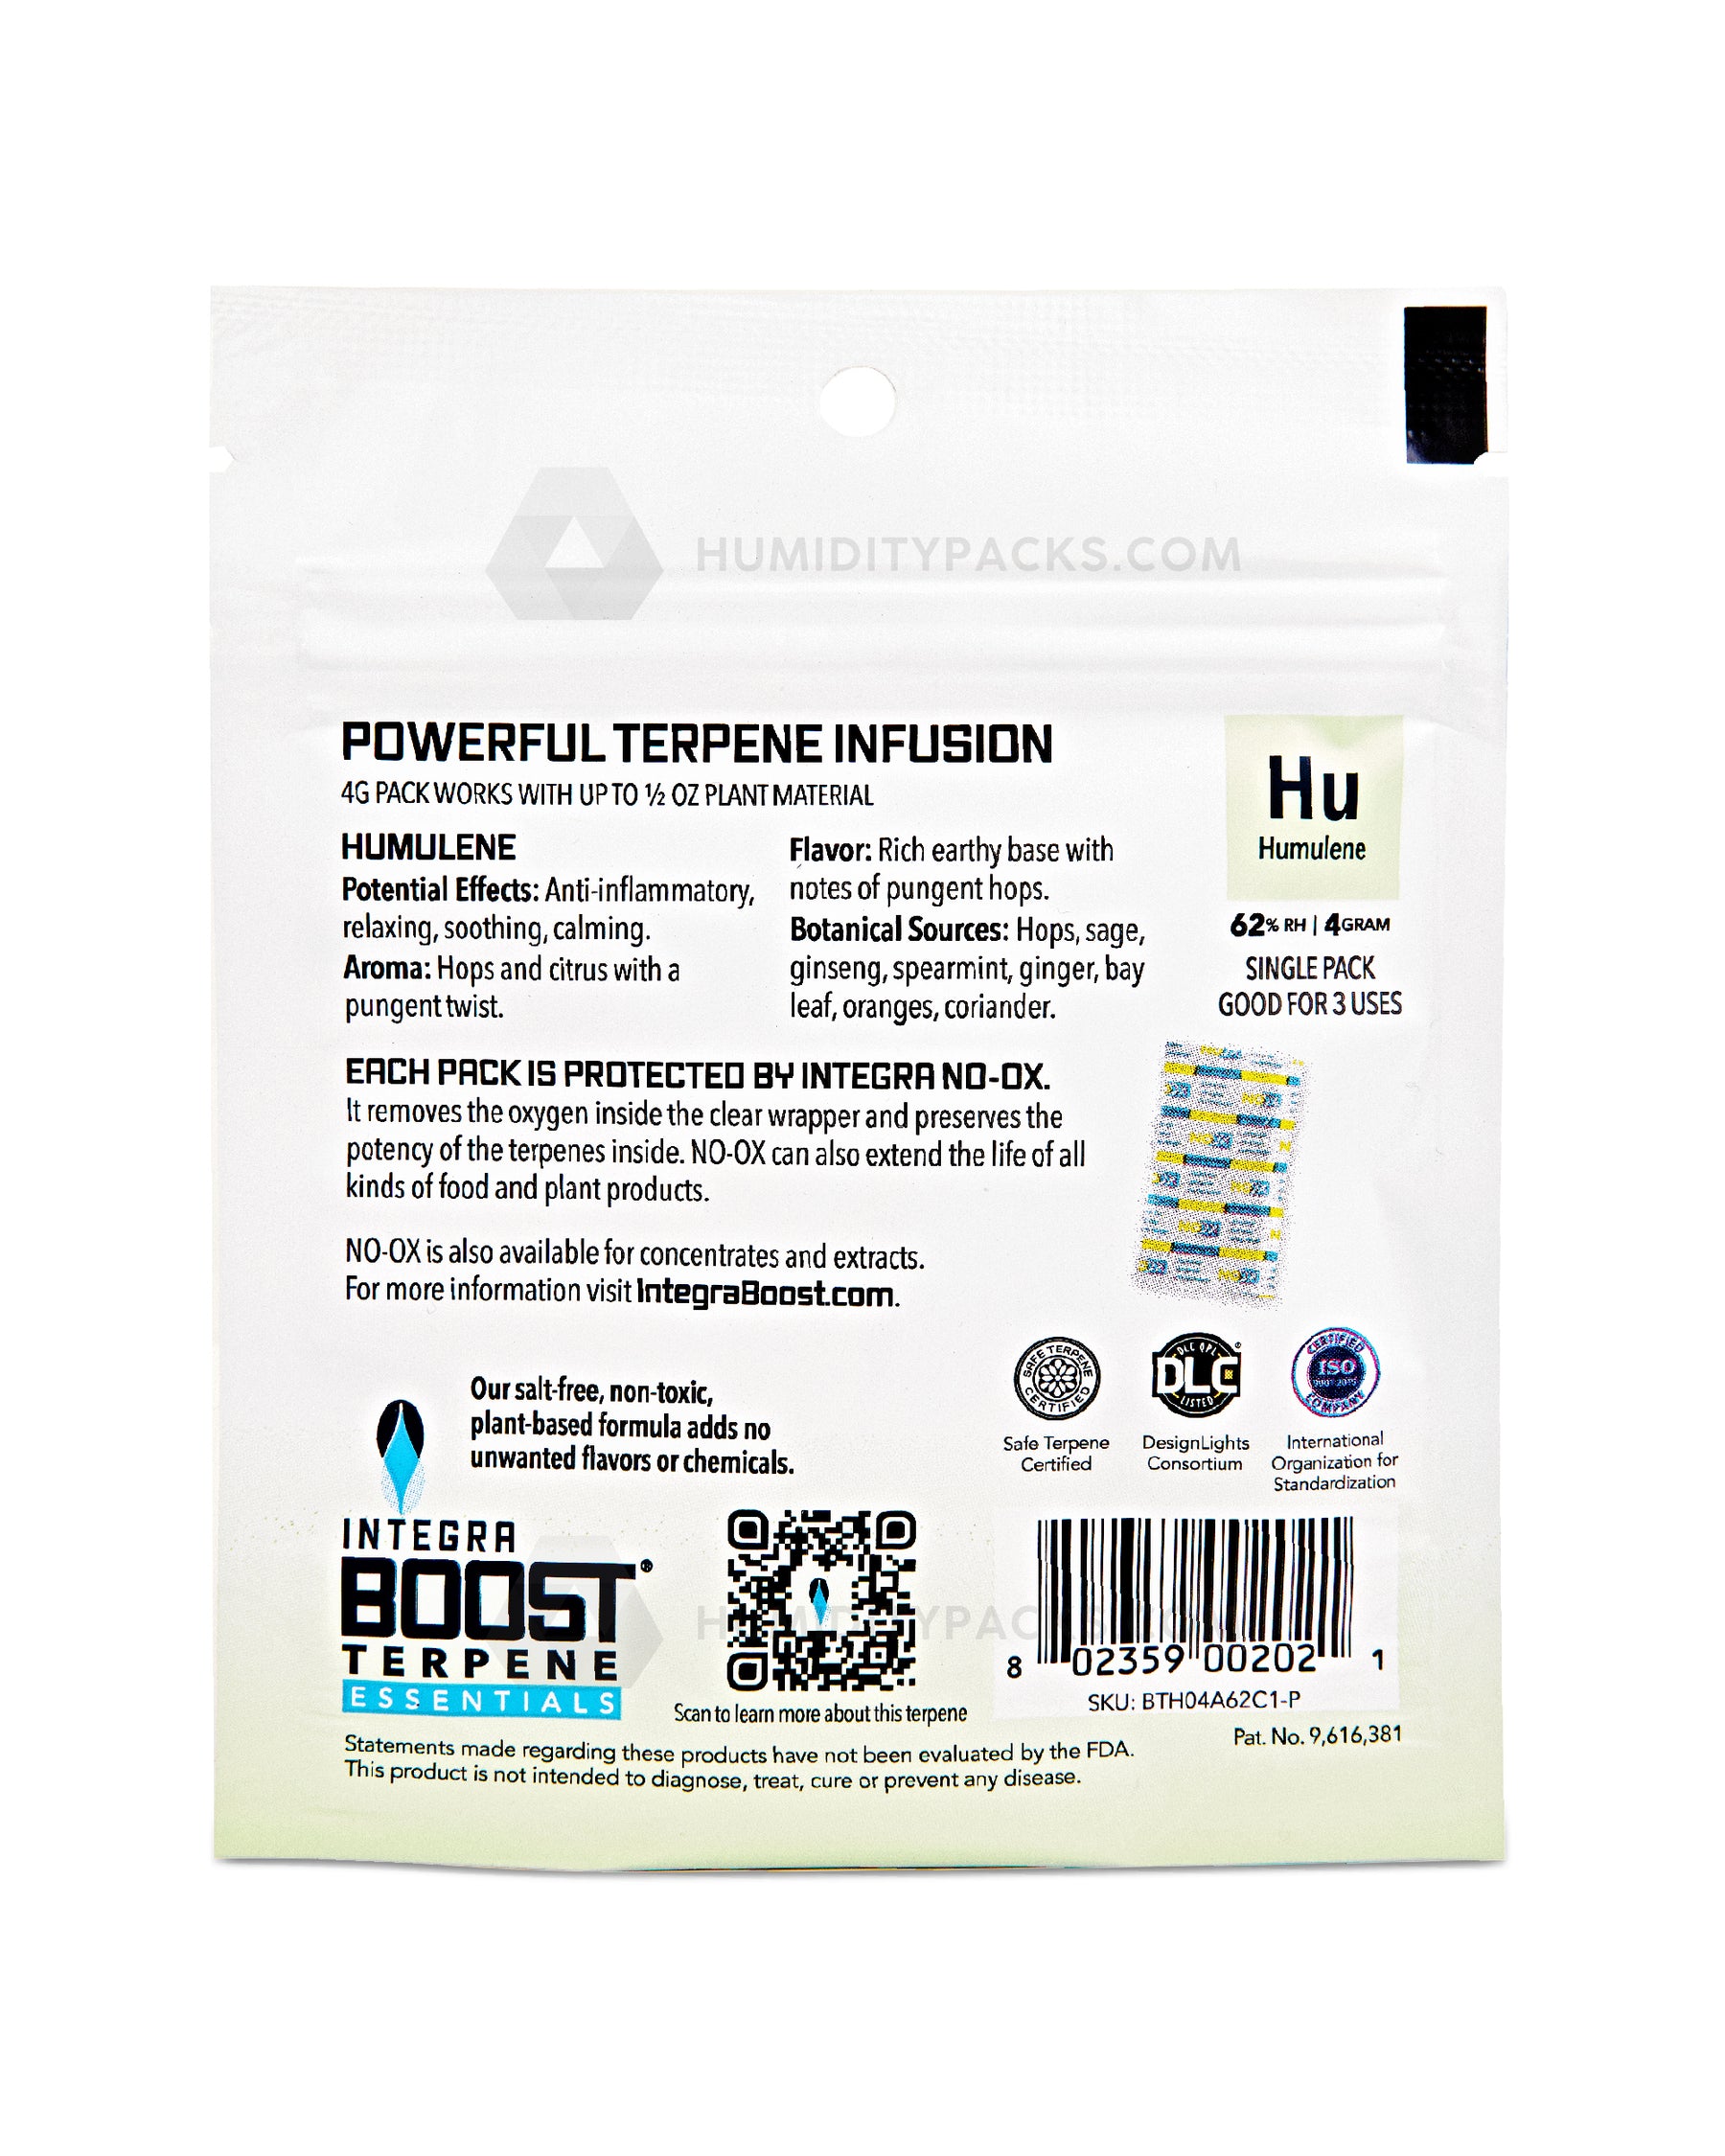 Integra Boost 4 Gram 2-Way Terpene Essentials Humulene Humidity Packs (62%) 48-Box Humidity Packs - 3